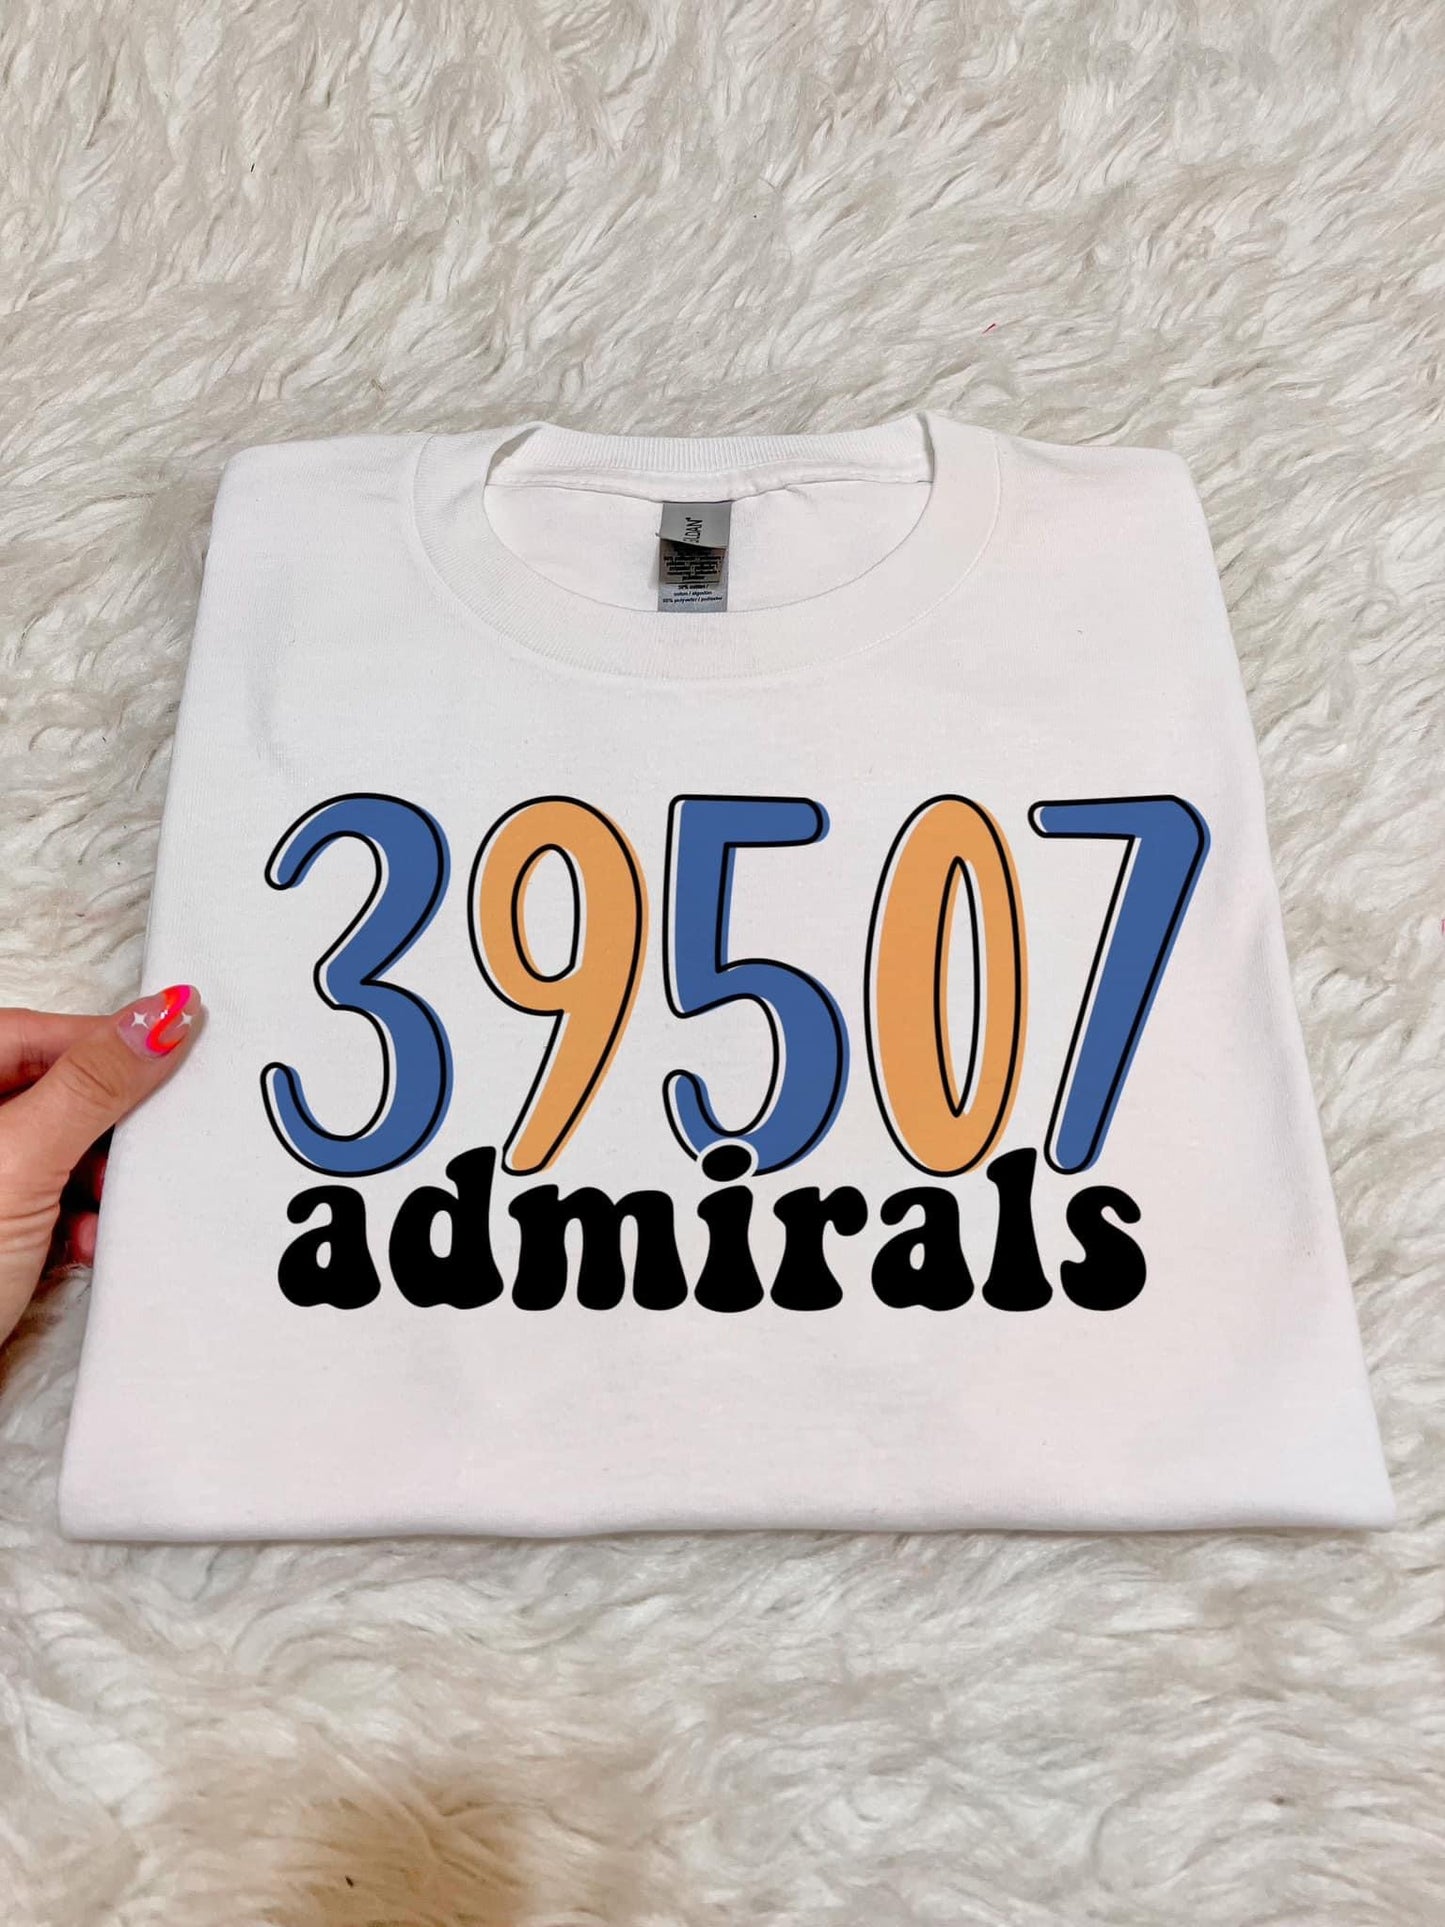 39507 admirals